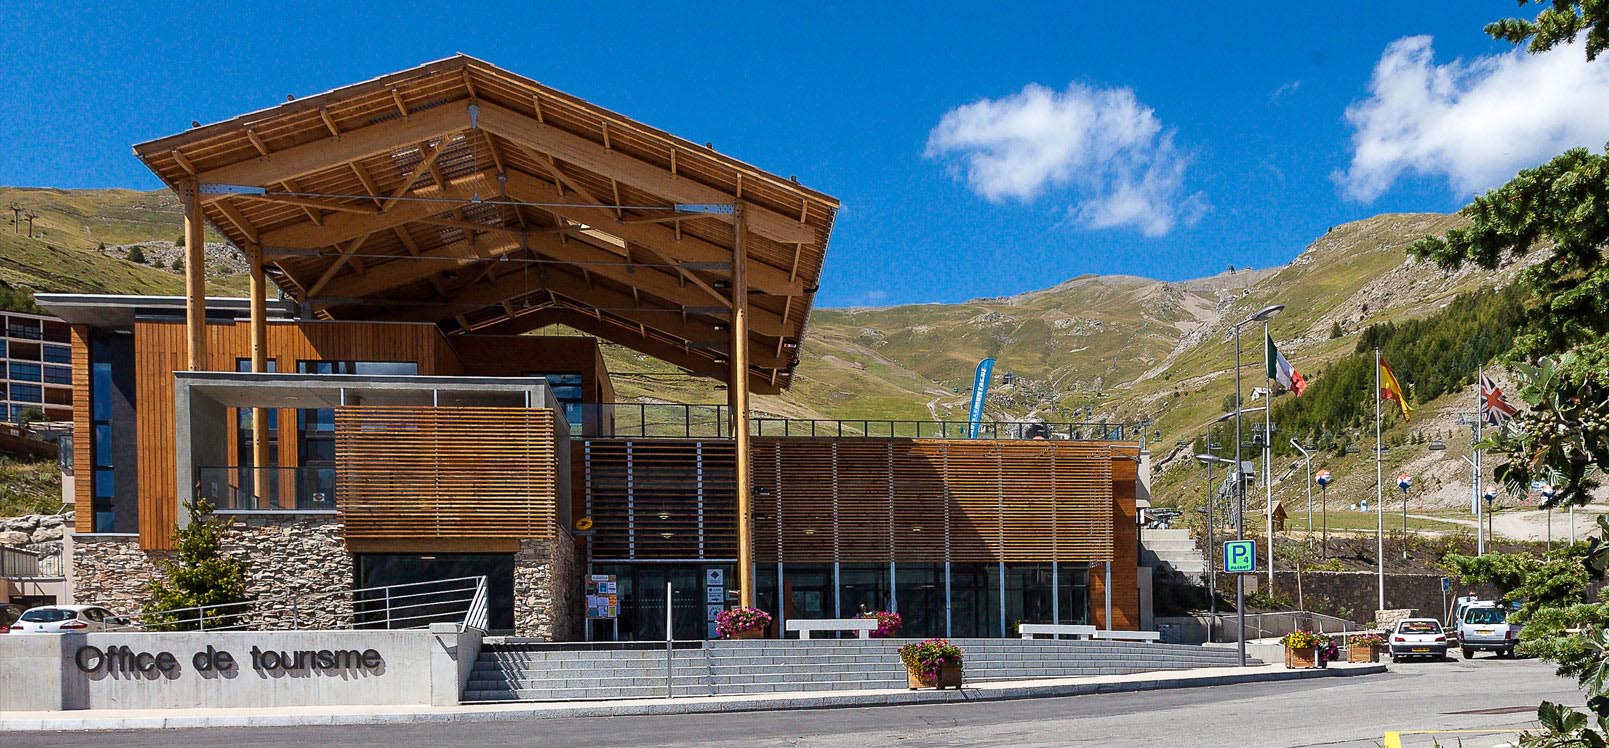 Offices de tourisme des Hautes-Alpes